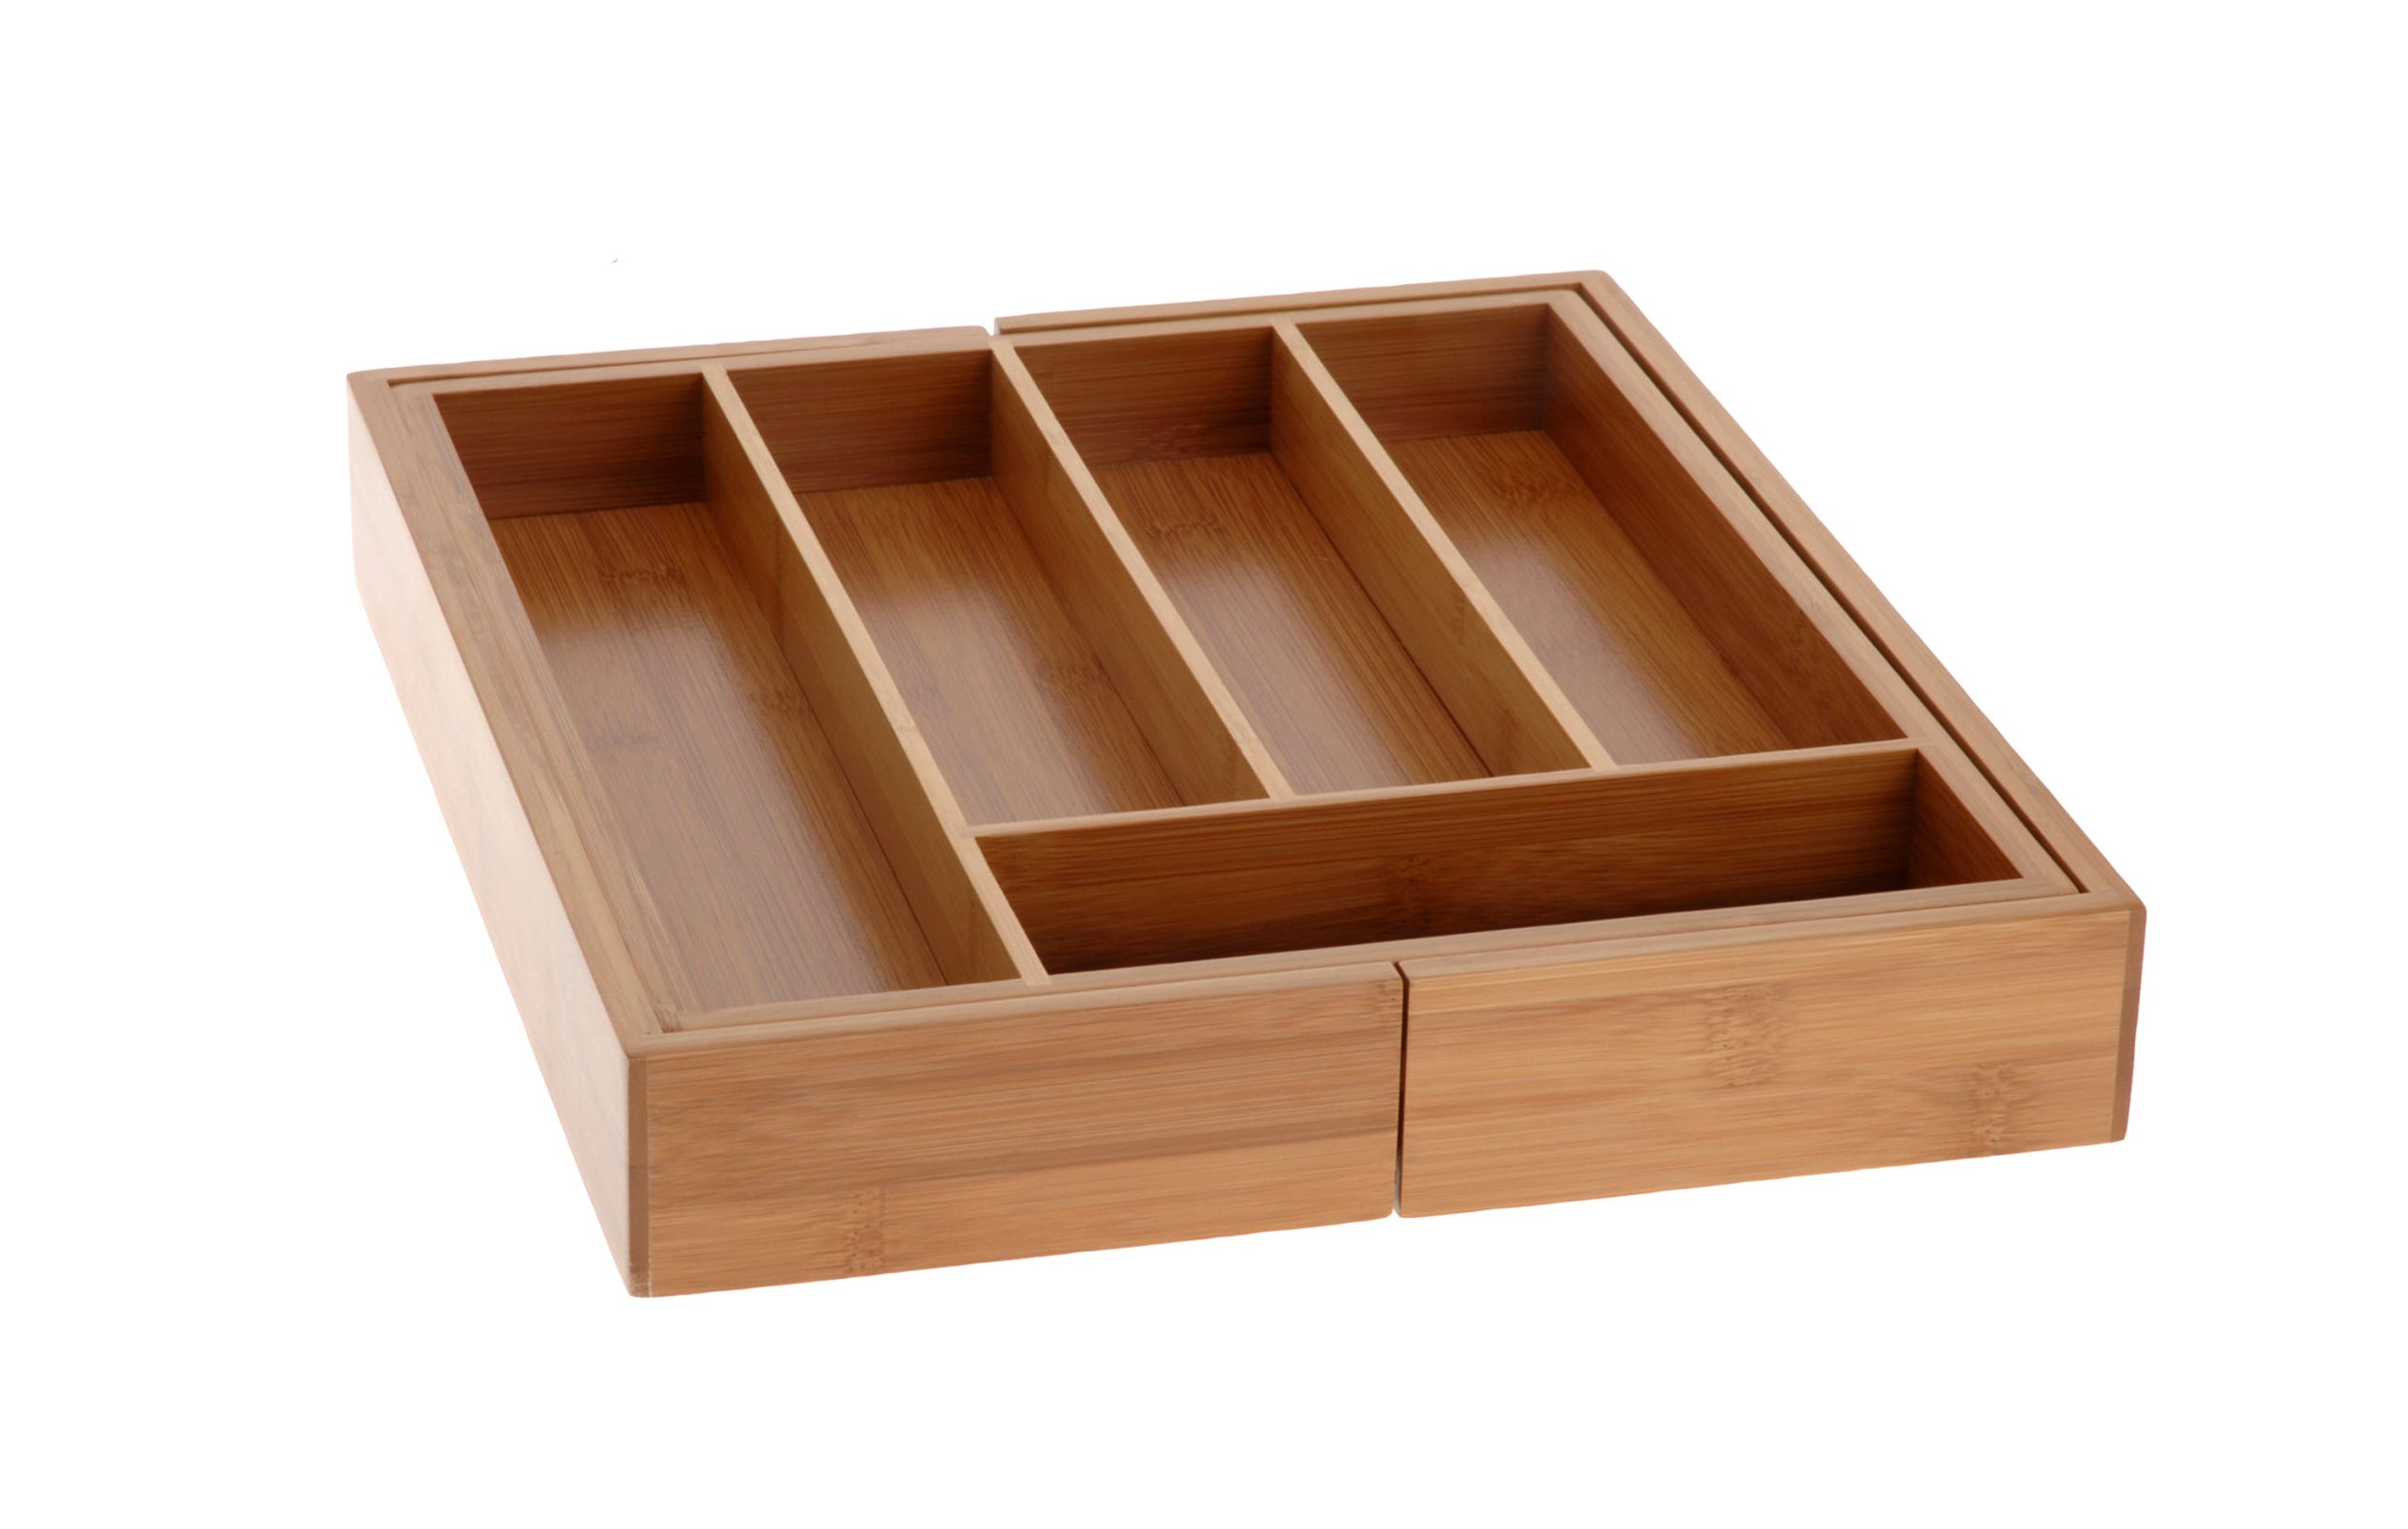  для столовых приборов в ящик для кухни бамбук - фото